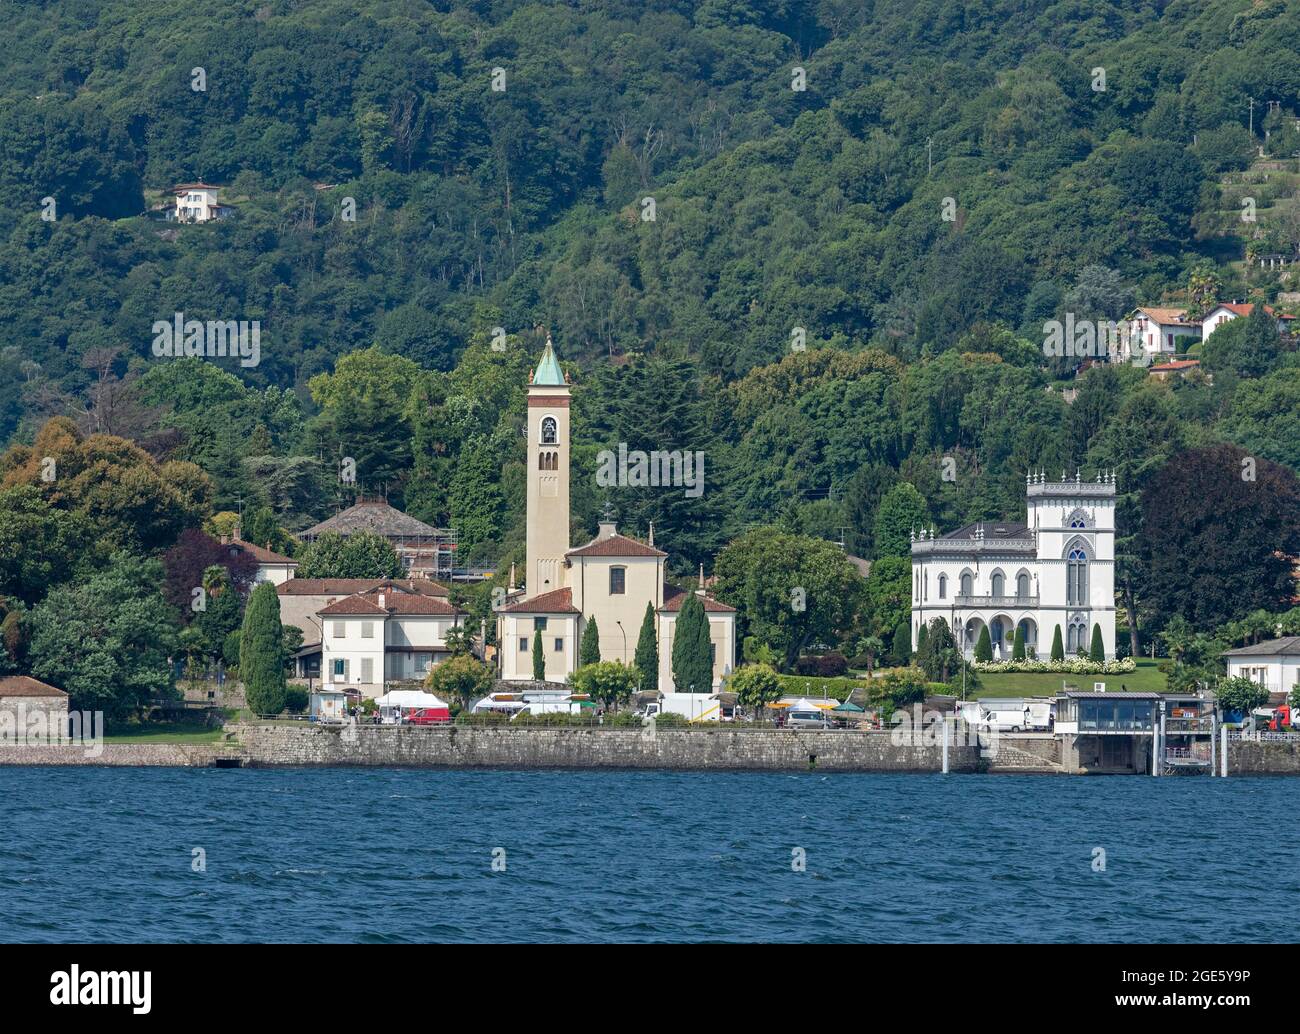 Chiesa e villa sul lungolago, Belgirate, Lago maggiore, Piemonte, Italia Foto Stock